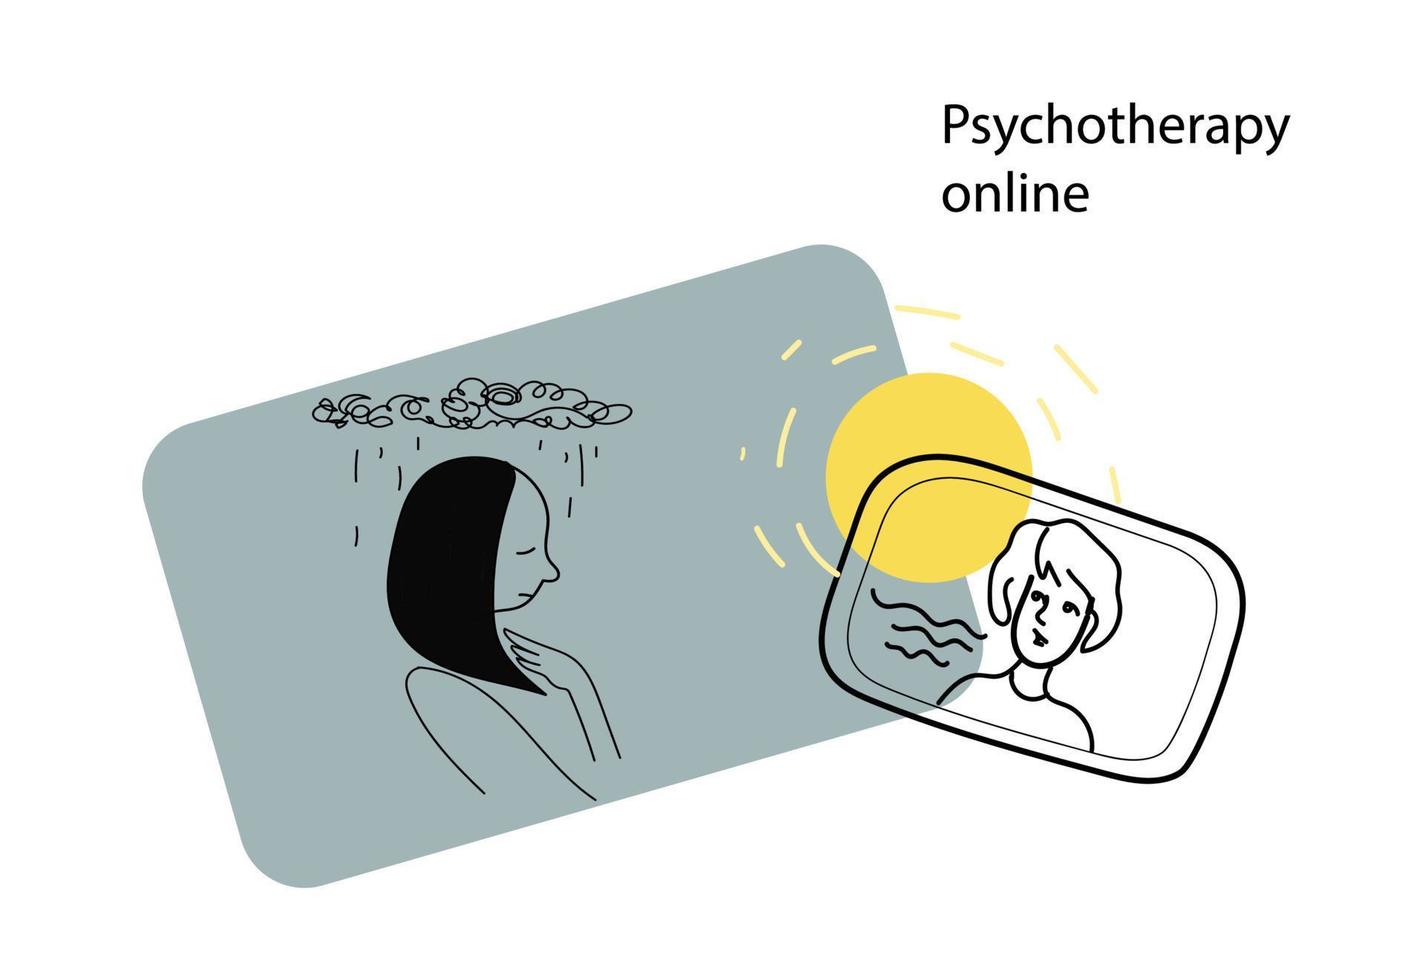 Psychotherapie online, Woche des Bewusstseins für psychische Gesundheit, Vektor-Doodle-Illustration vektor